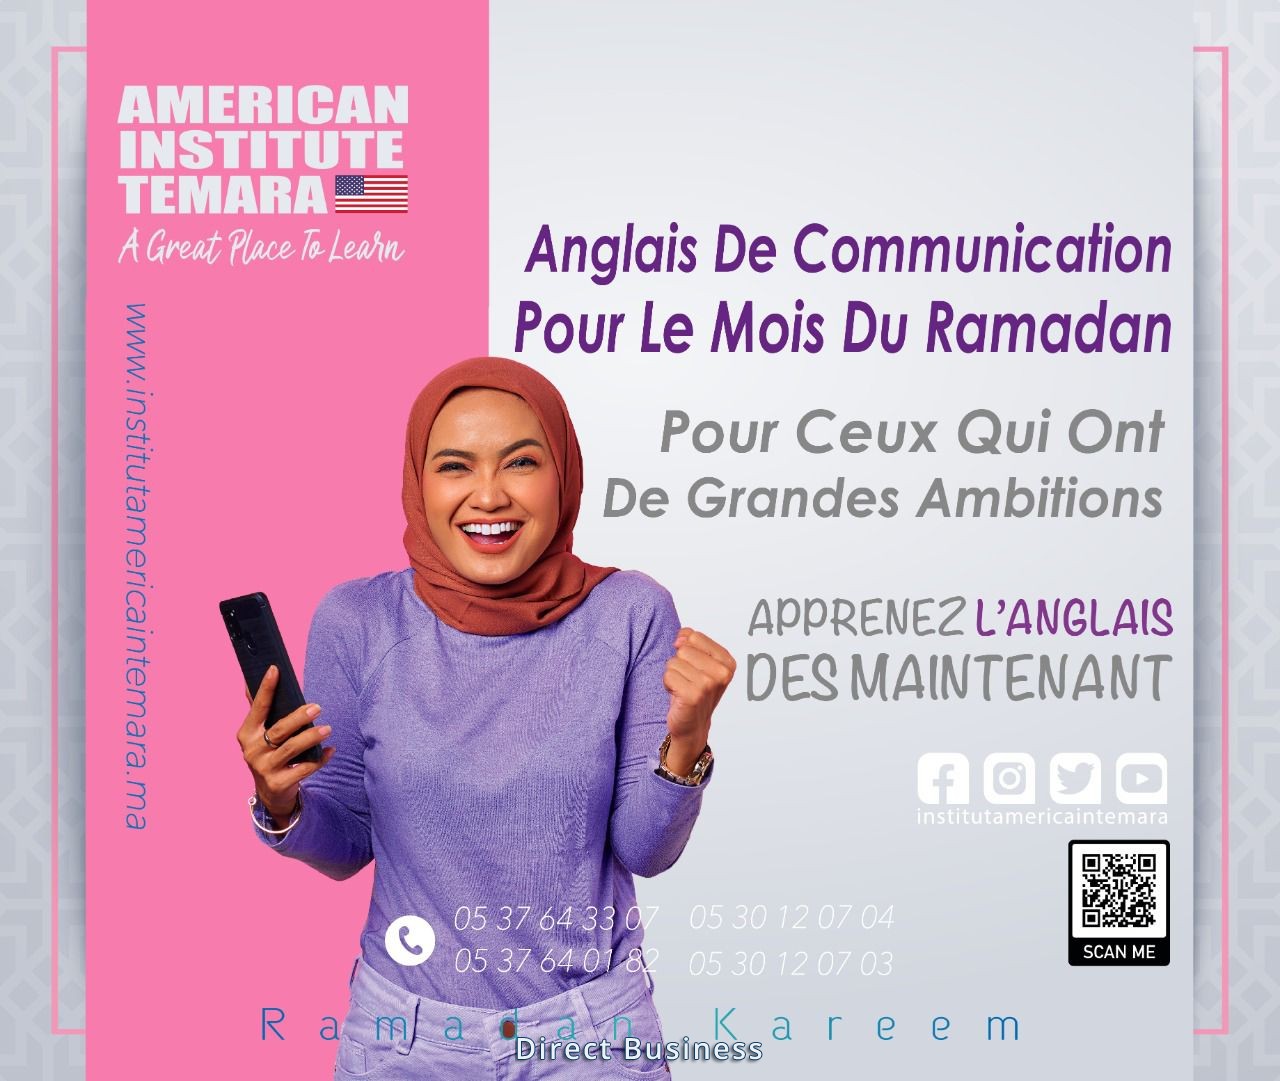 Session Spéciale Ramadan ! Profitez de 30 heures de cours accélérés - Institut Americain TEMARA